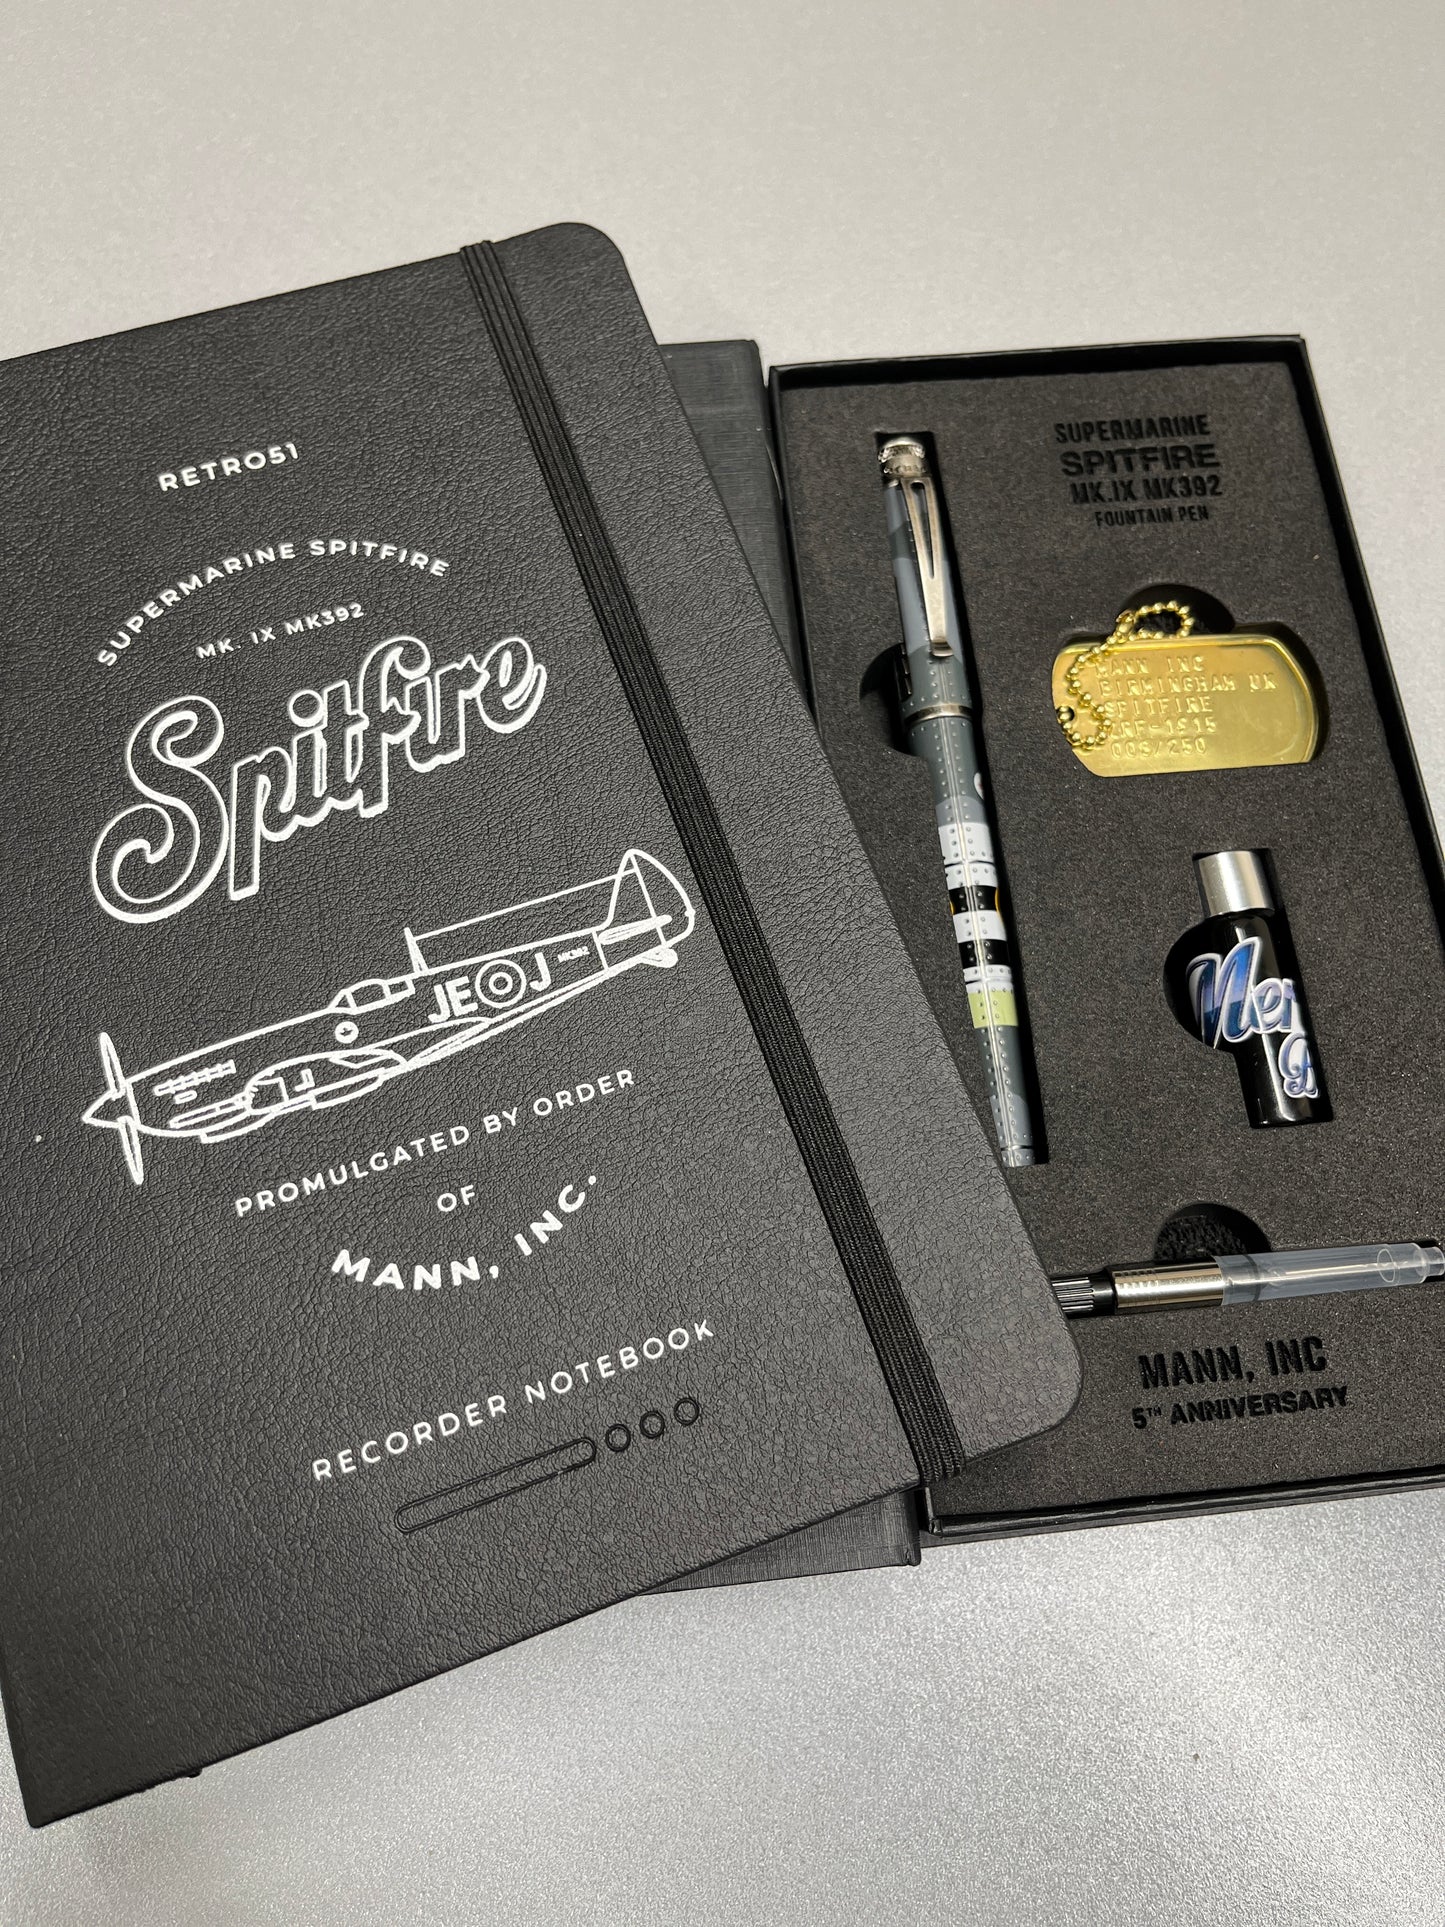 Retro 51 Fountain Pen - Spitfire Notebook Edition (Mann Inc Exclusive)